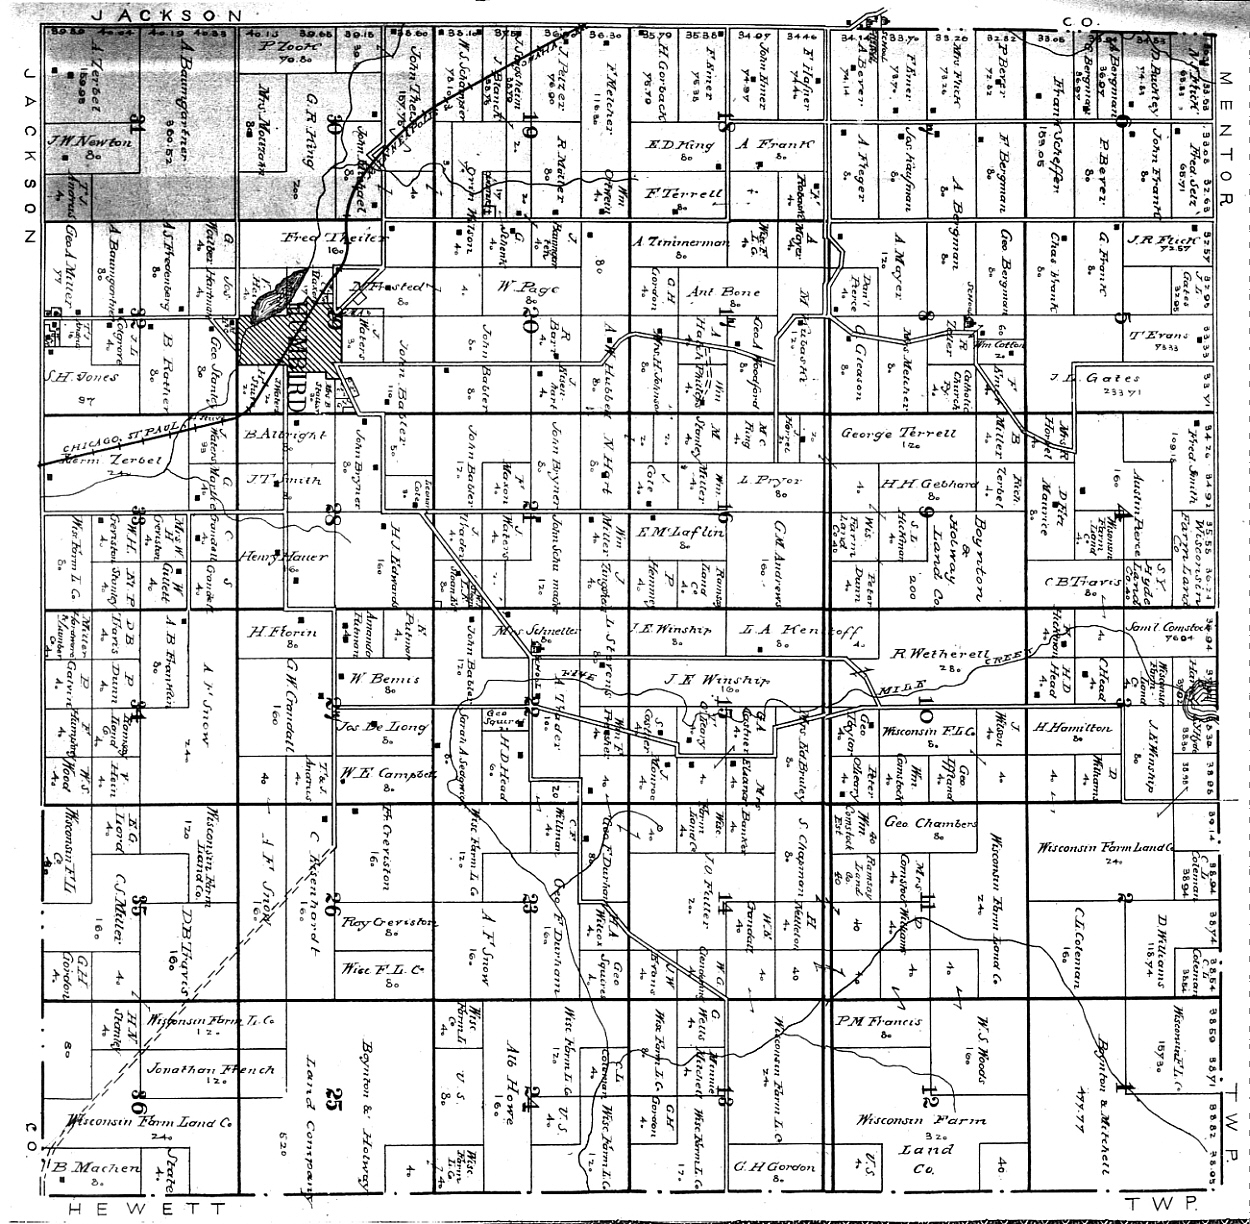 Index of Clark County, Wisconsin Maps & Gazetteers